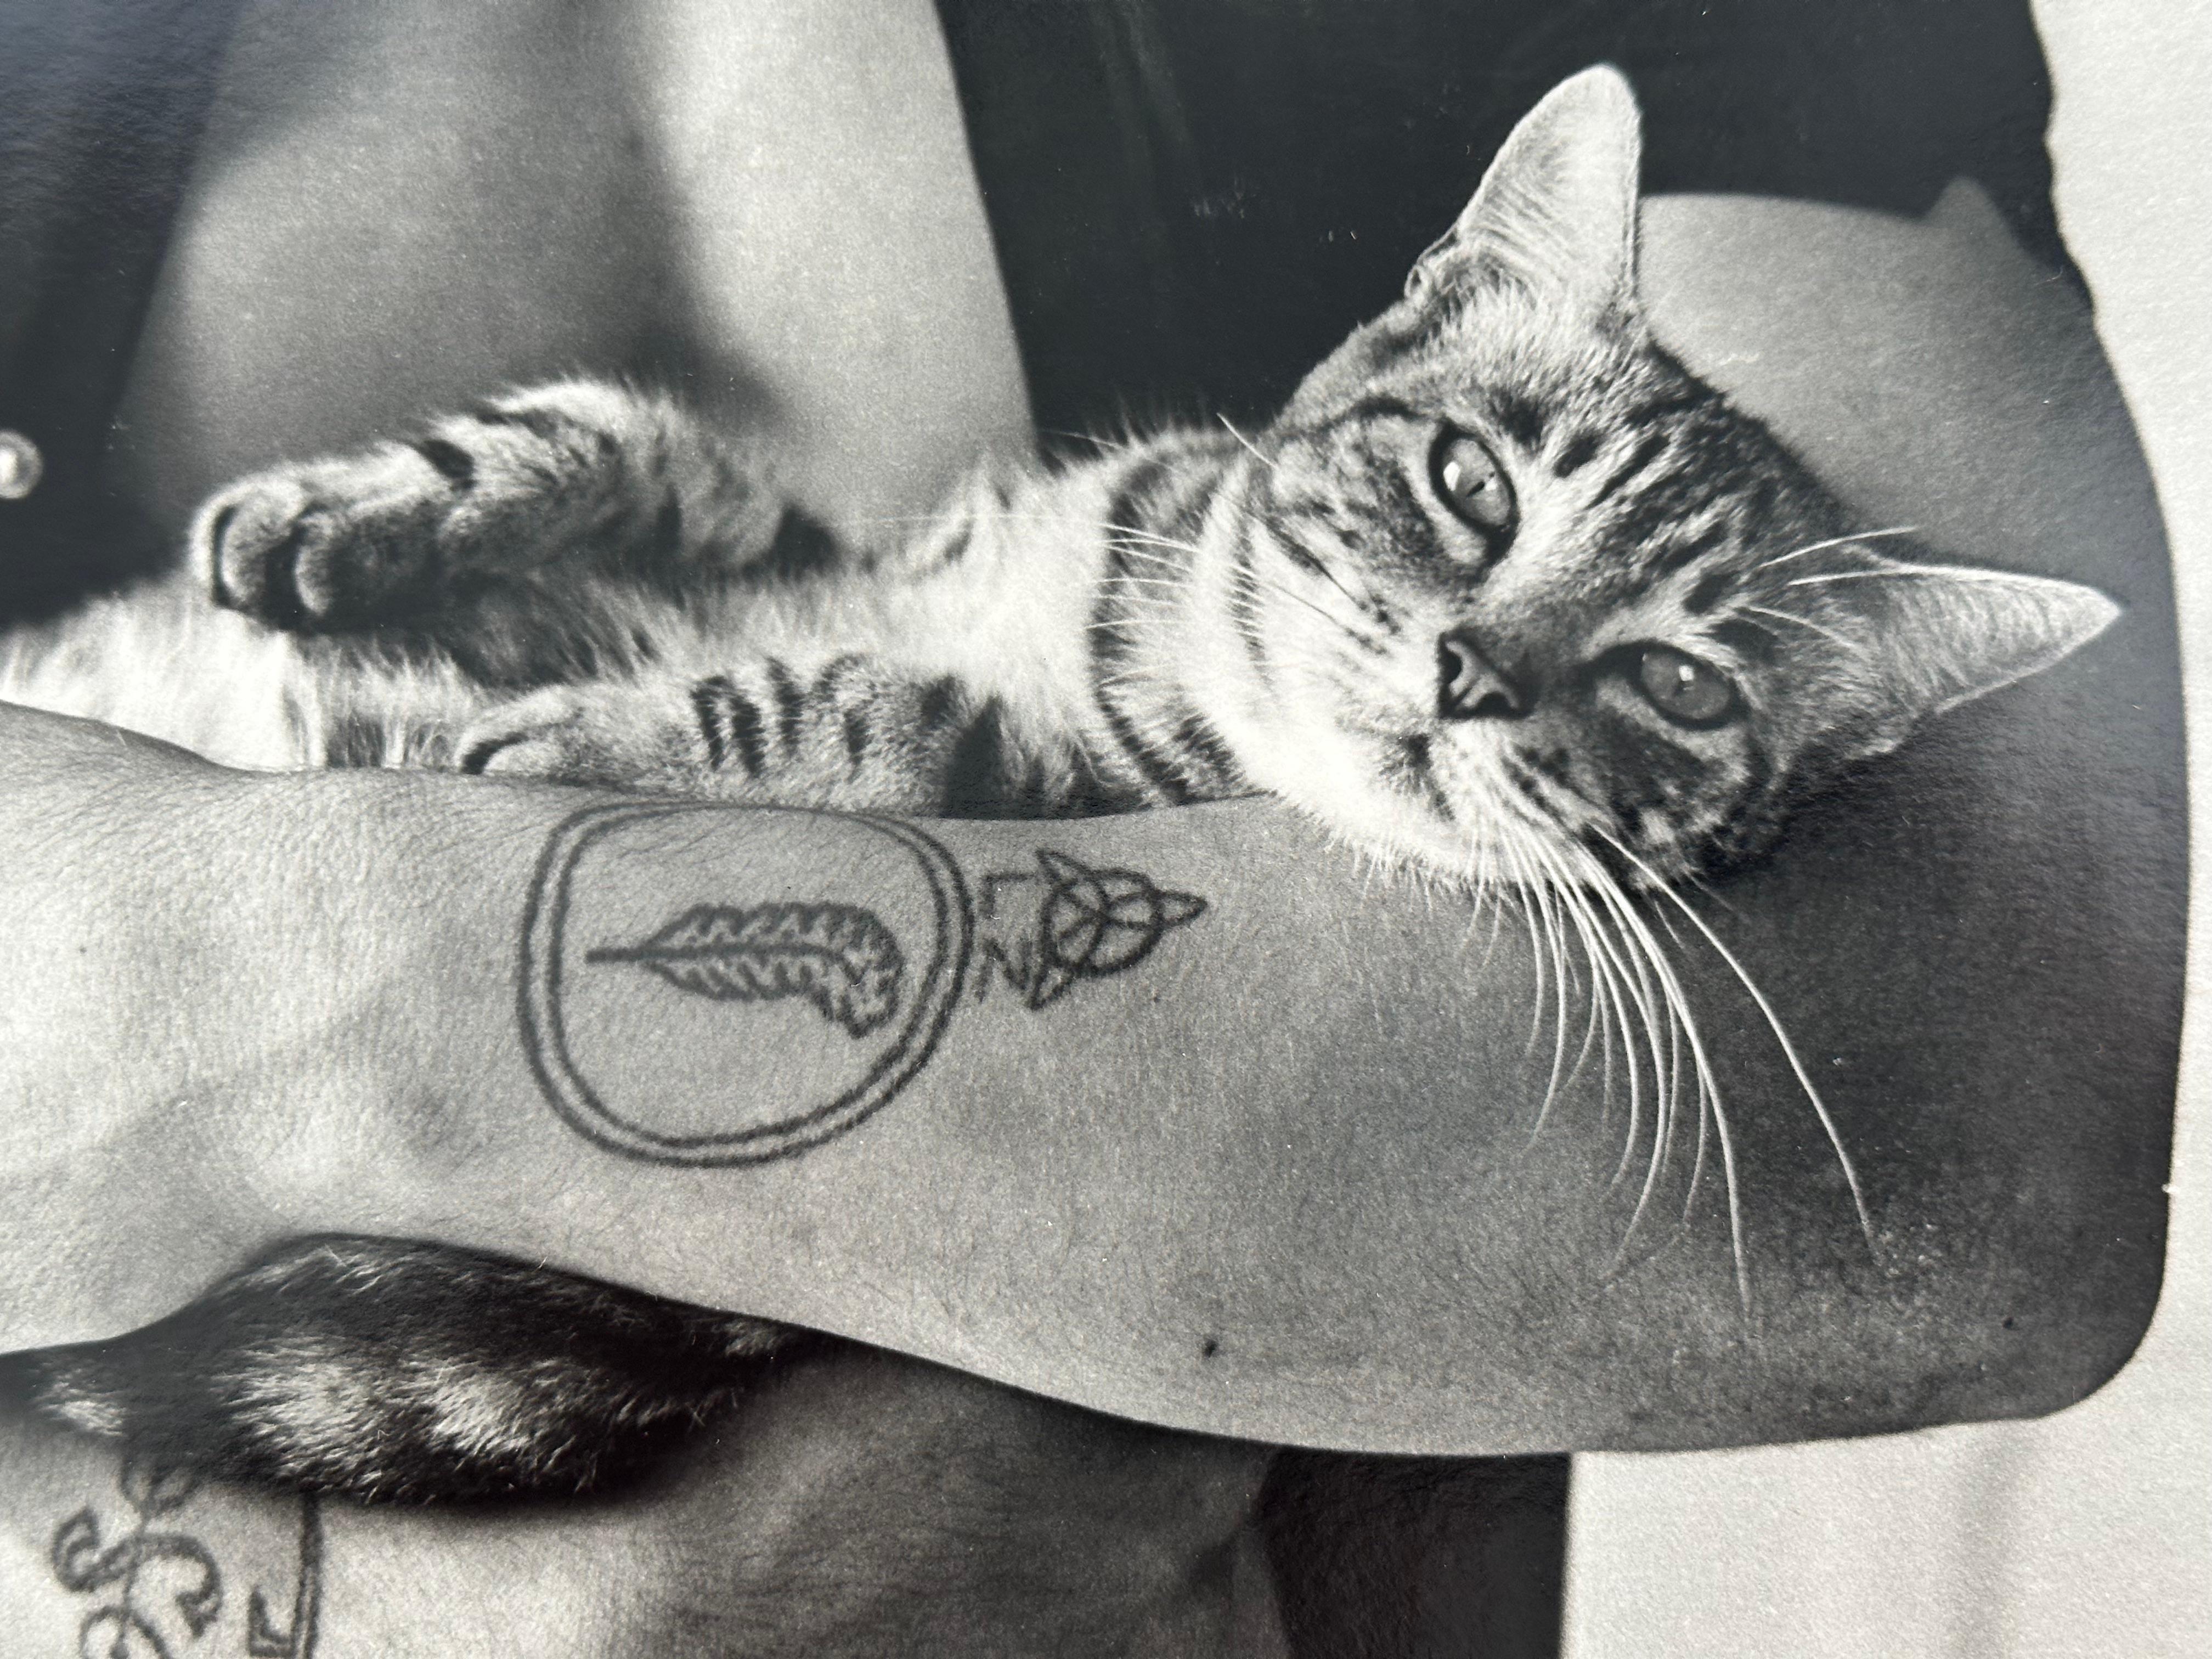 Christopher Makos, amerikanischer Fotograf, geb. 1948. Tätowierter Mann hält Katze, ca. 1970. Verso mit rotem Bleistift signiert.

Größe 8,25 x 10  Zoll. Ungerahmt und unmontiert.

Dieses Beispiel war ein Pressefoto, das an die Büros des After Dark